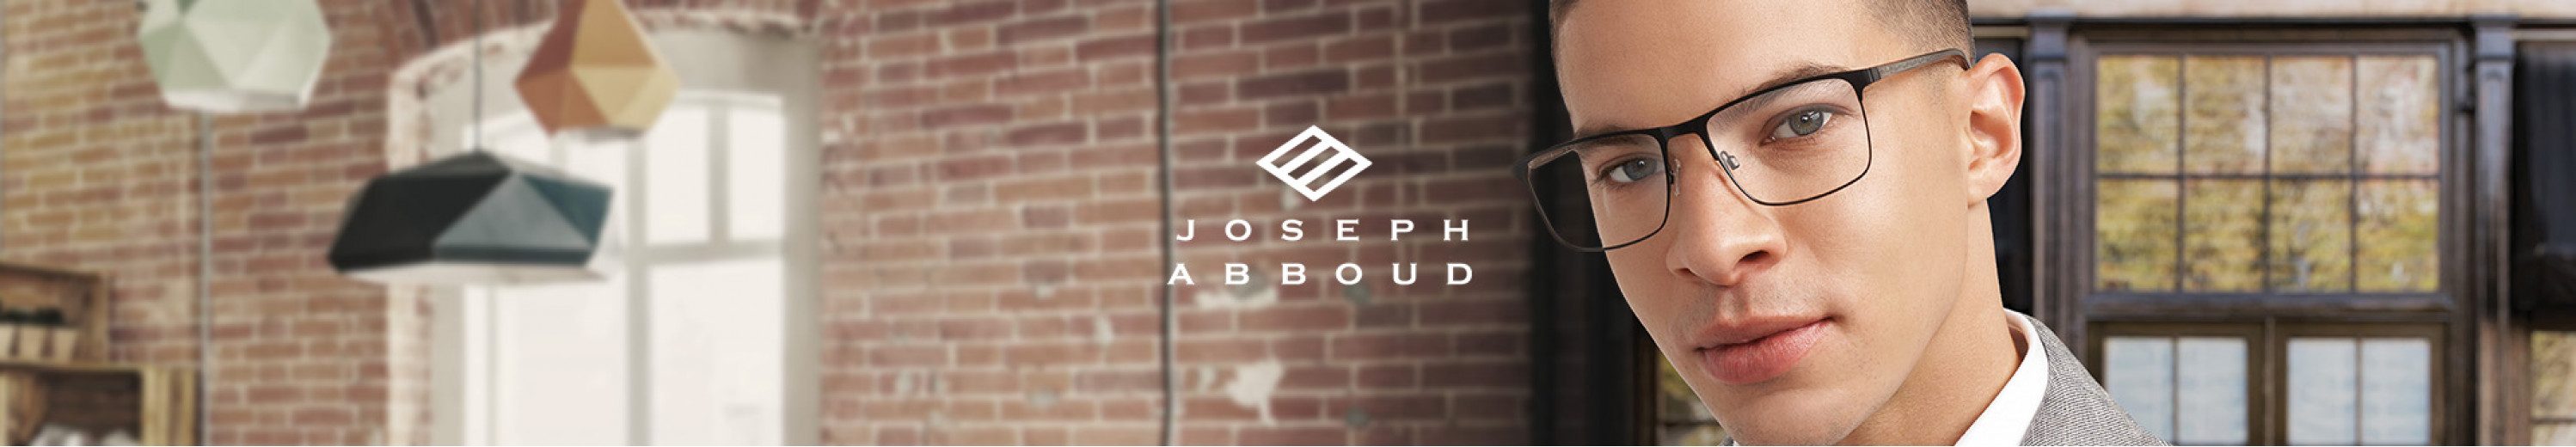 Joseph Abboud Eyeglasses for Men